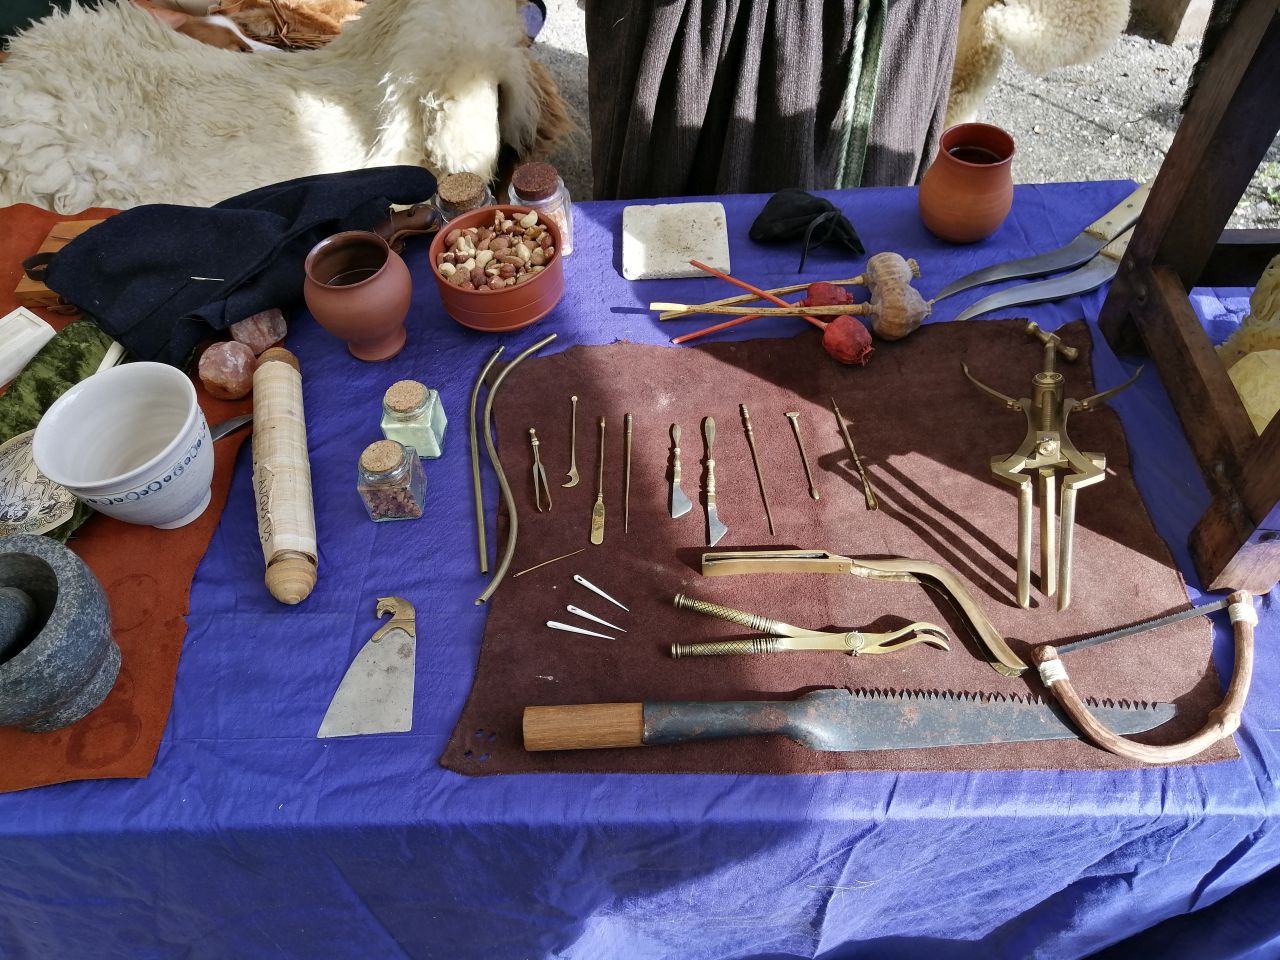 Chirurgische Instrumente, die den heute eingesetzten bereits sehr ähnlich waren.